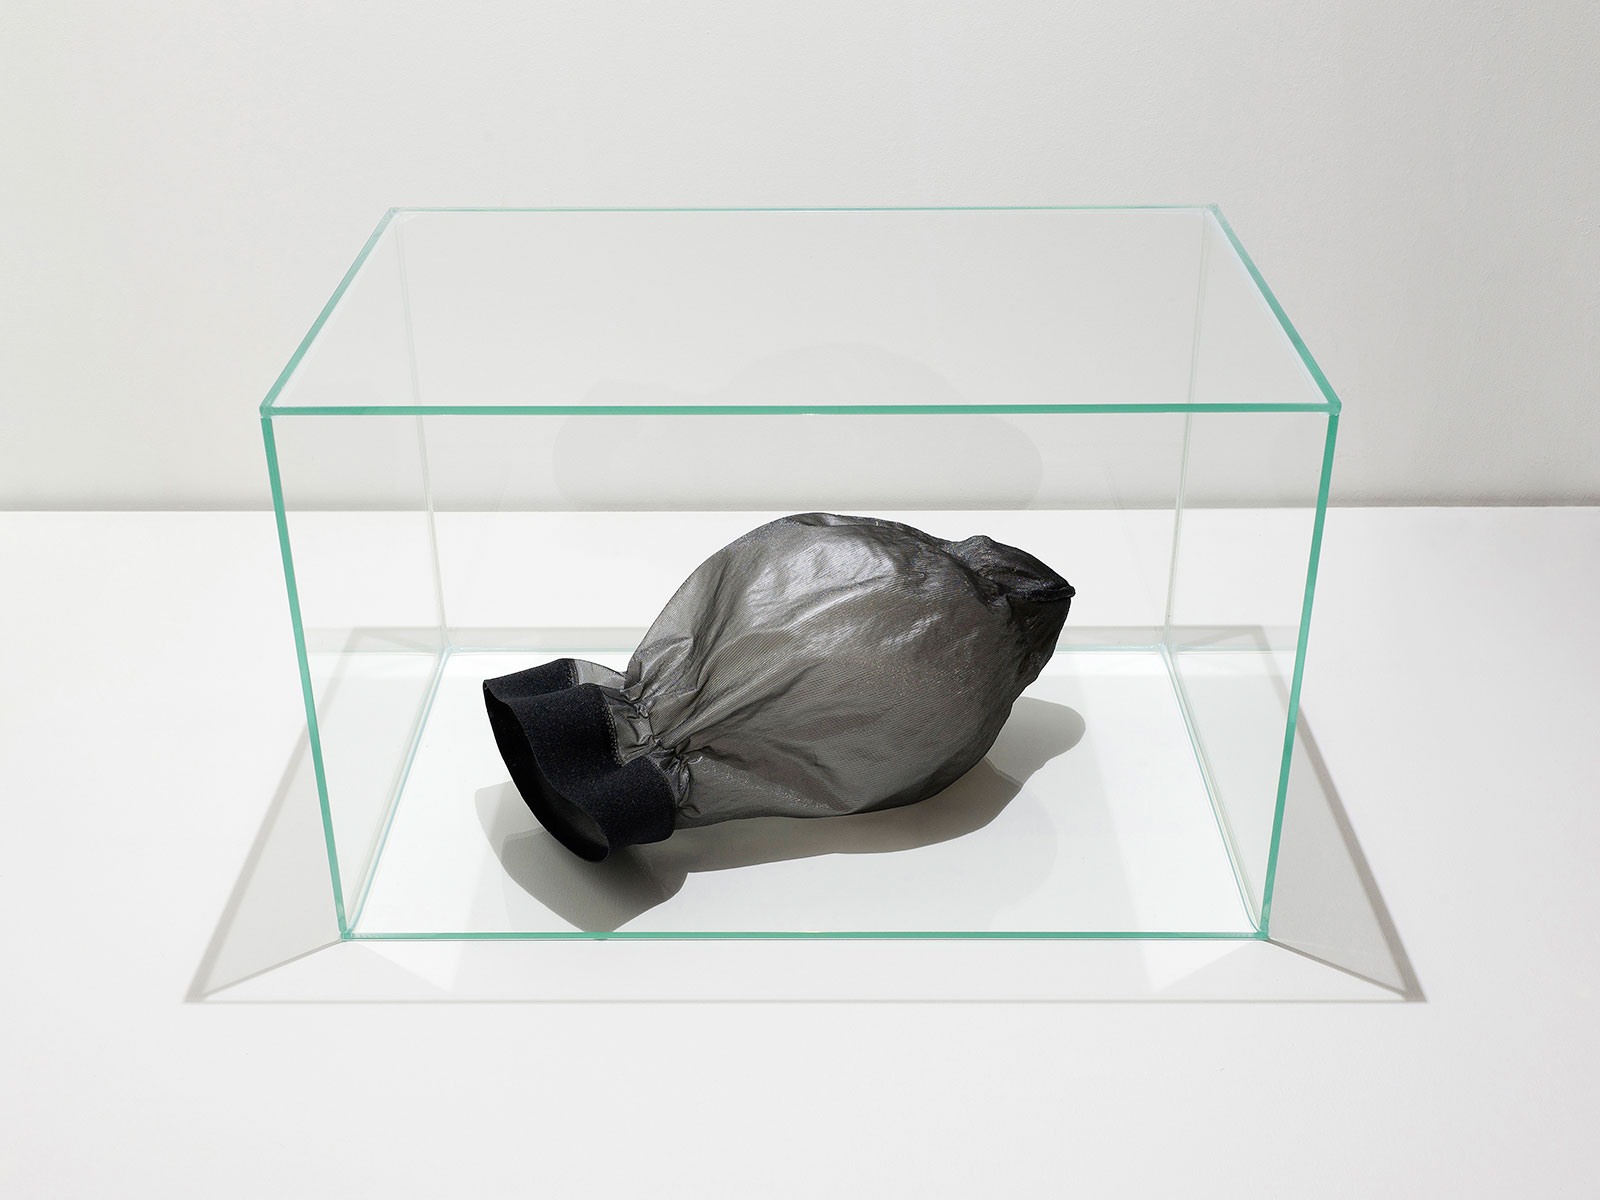 schwarzer Polyamid-Strumpf mit erschlafftem Ballon und Epoxidharz, platziert in einem Glaskubus